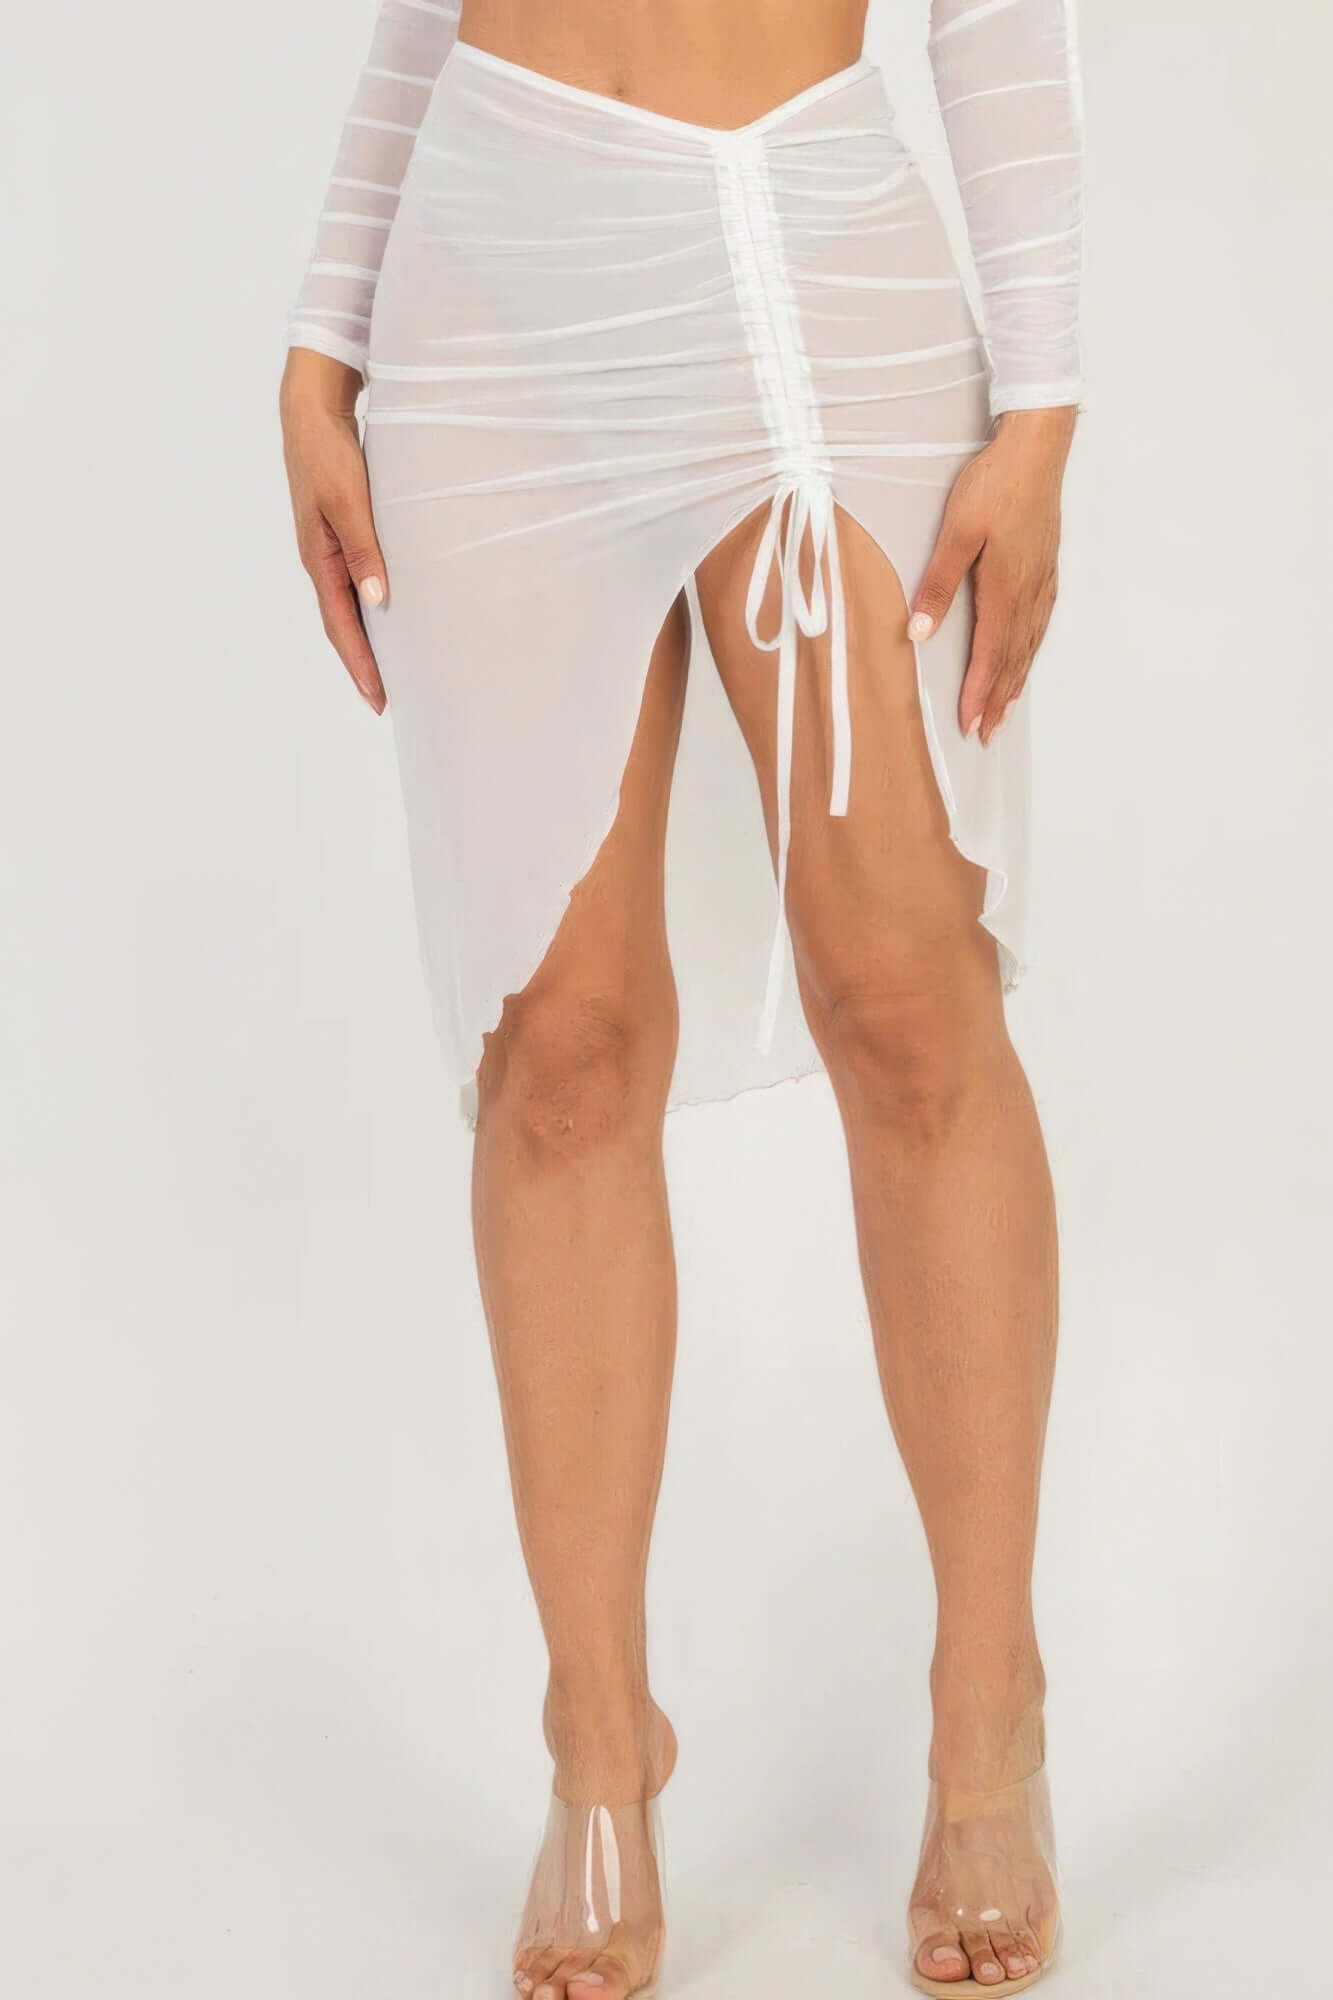 - Sexy Sheer Mesh Drawstring Ruched Skirt - womens skirt at TFC&H Co.